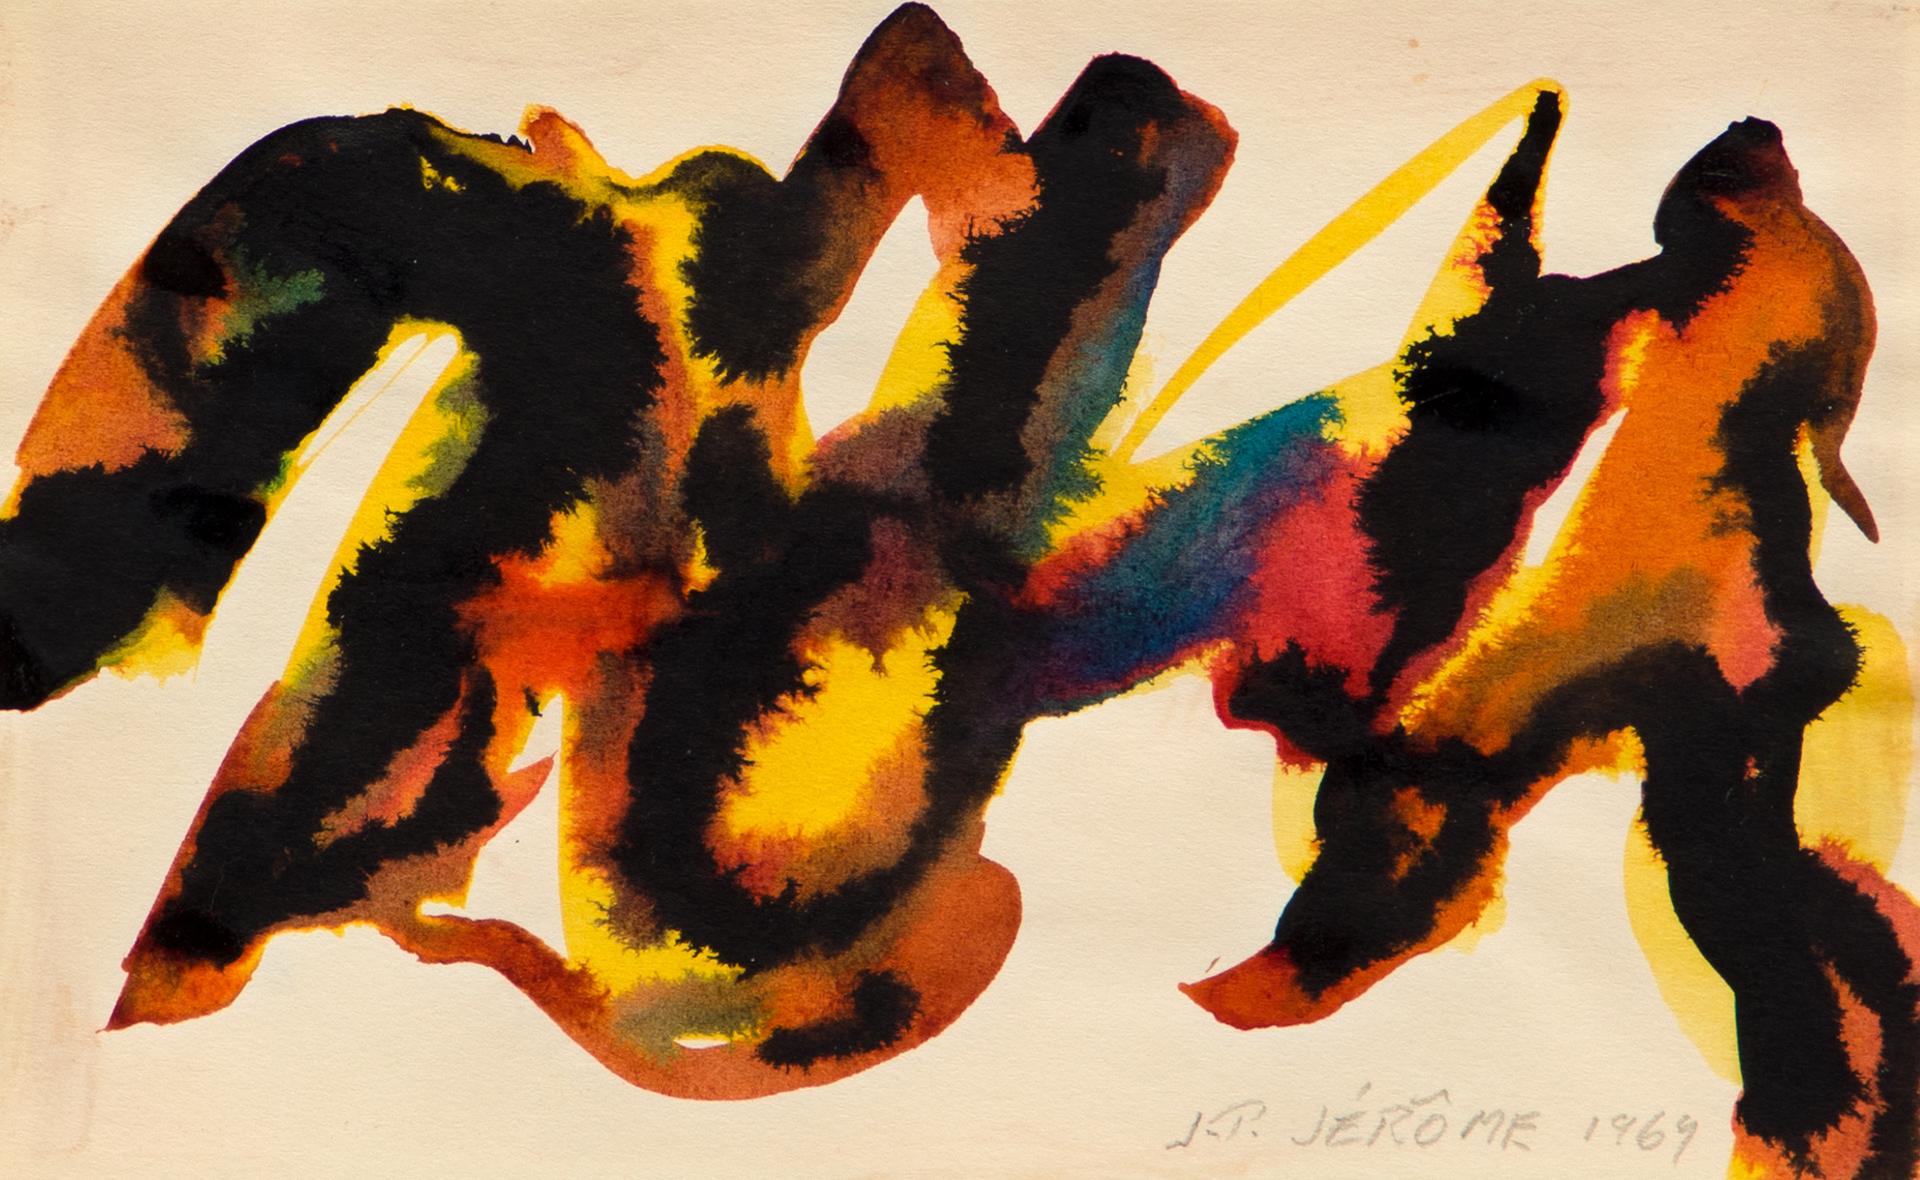 Jean-Paul Jérôme (1928-2004) - Sans titre / Untitled, 1969